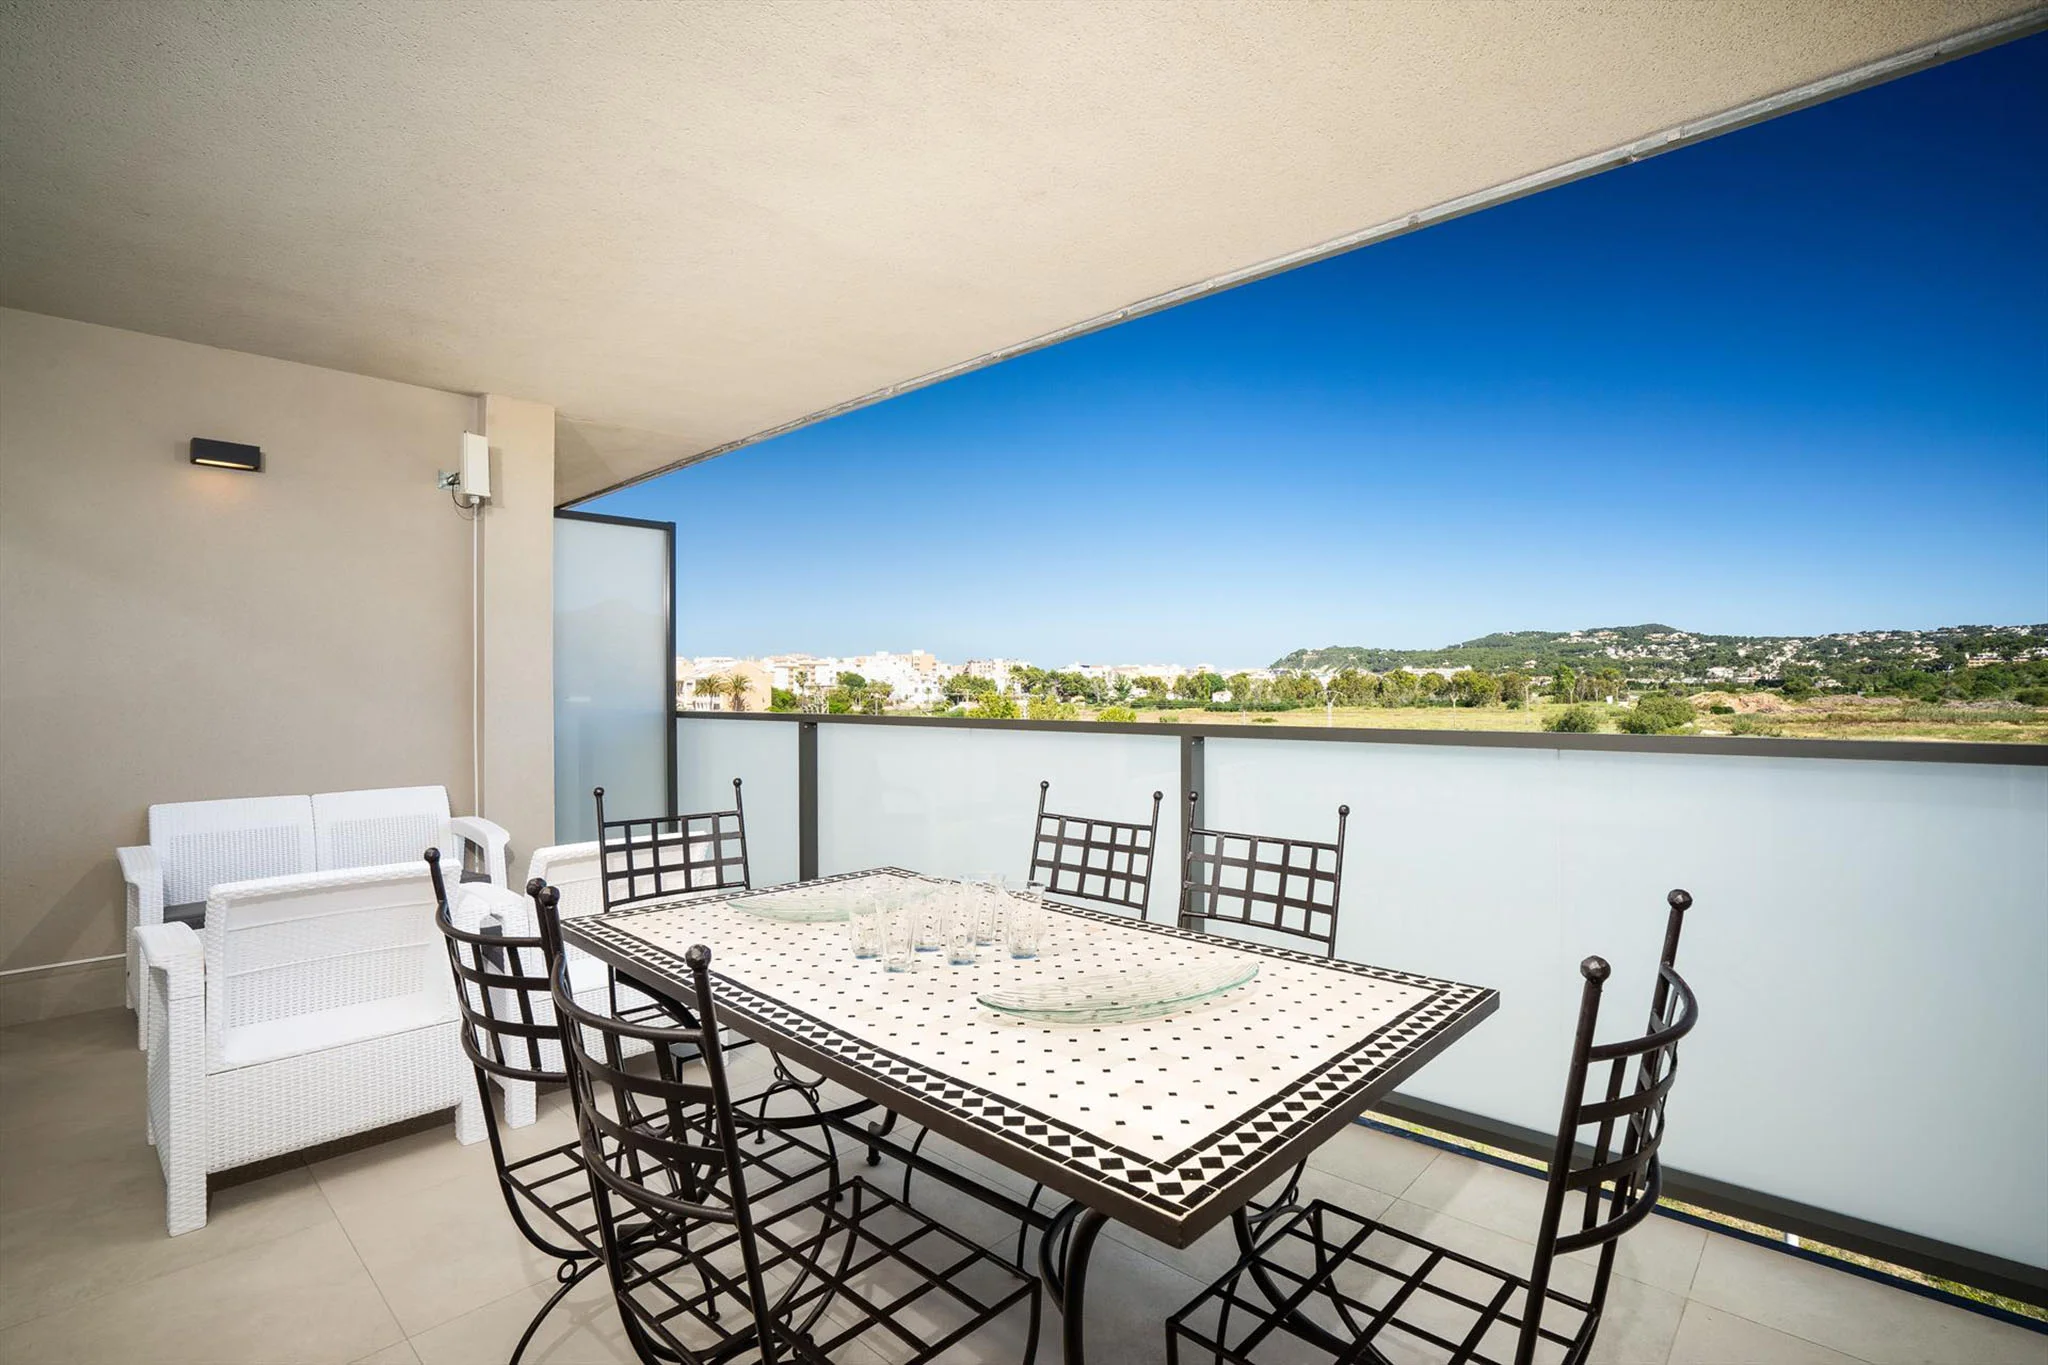 Terraza en balcón cubierto en moderno apartamento con Aguila Rent a Villa